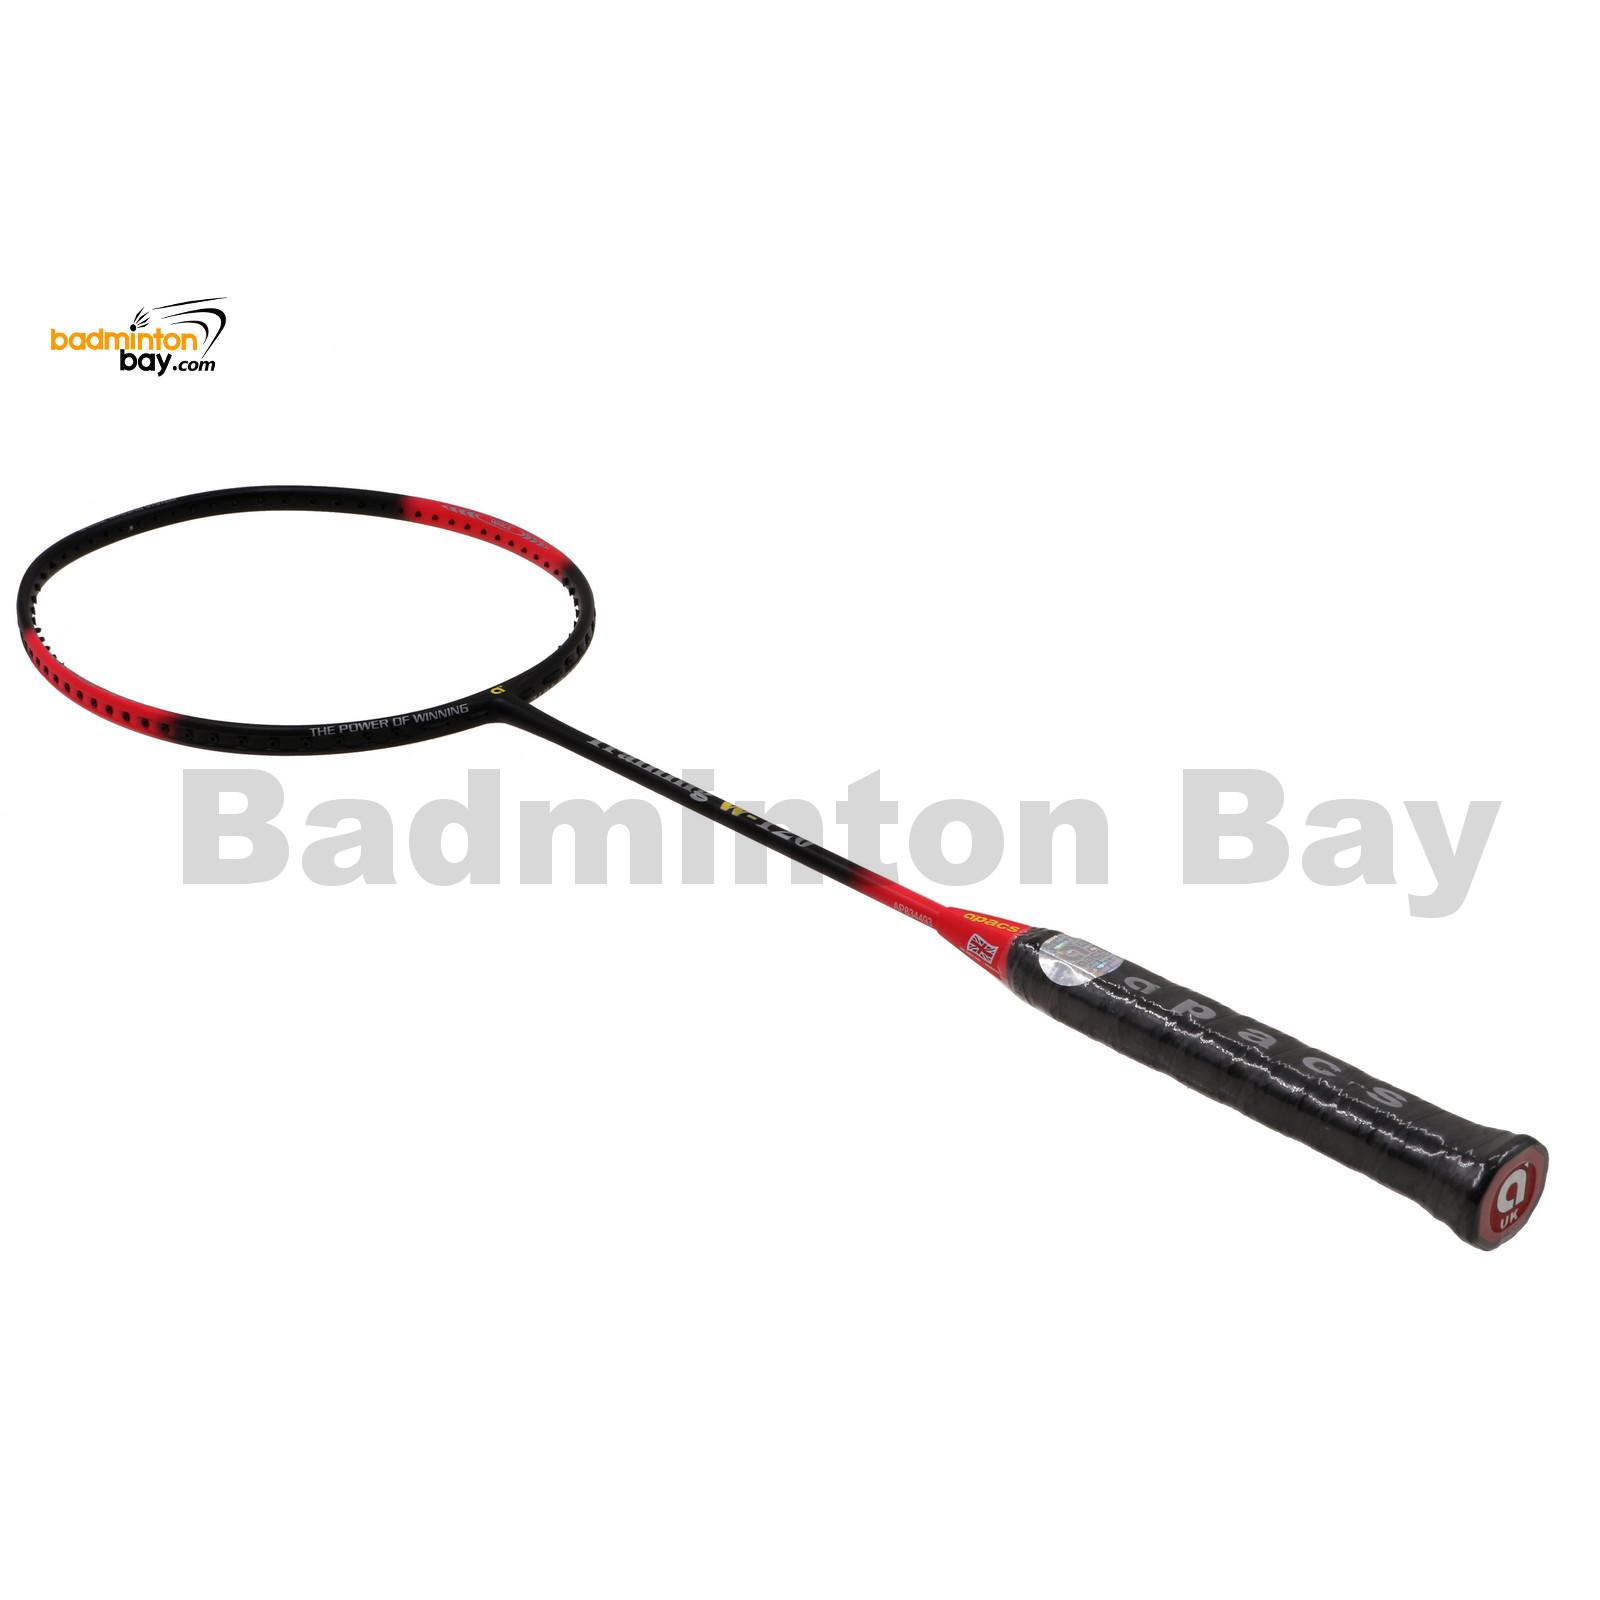 Badminton Racket FREE Express Shipping Pink/Black Apacs Training Racket W-120 